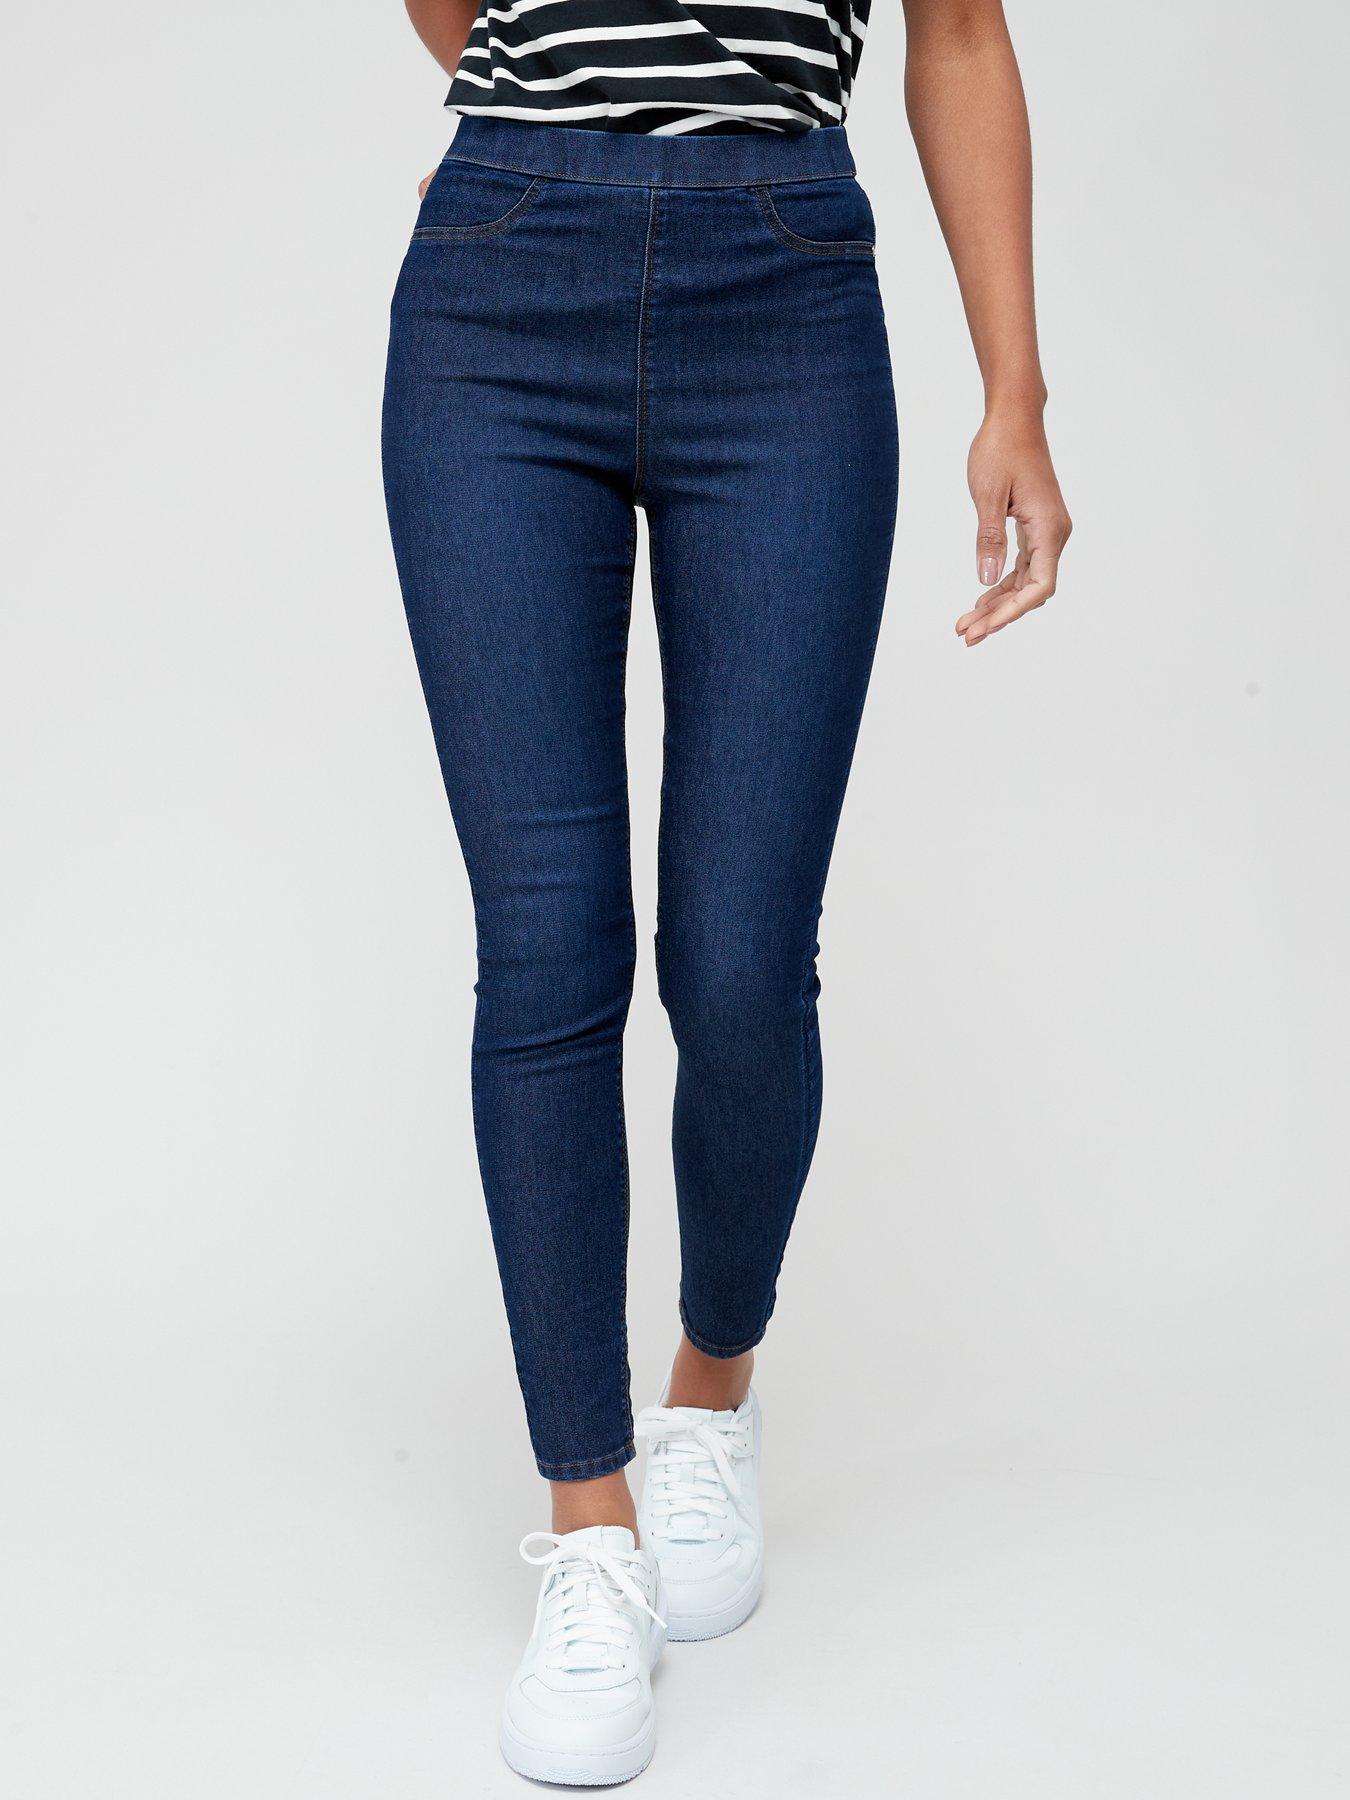 Girls' Jeans Blue Jeggings Skinny